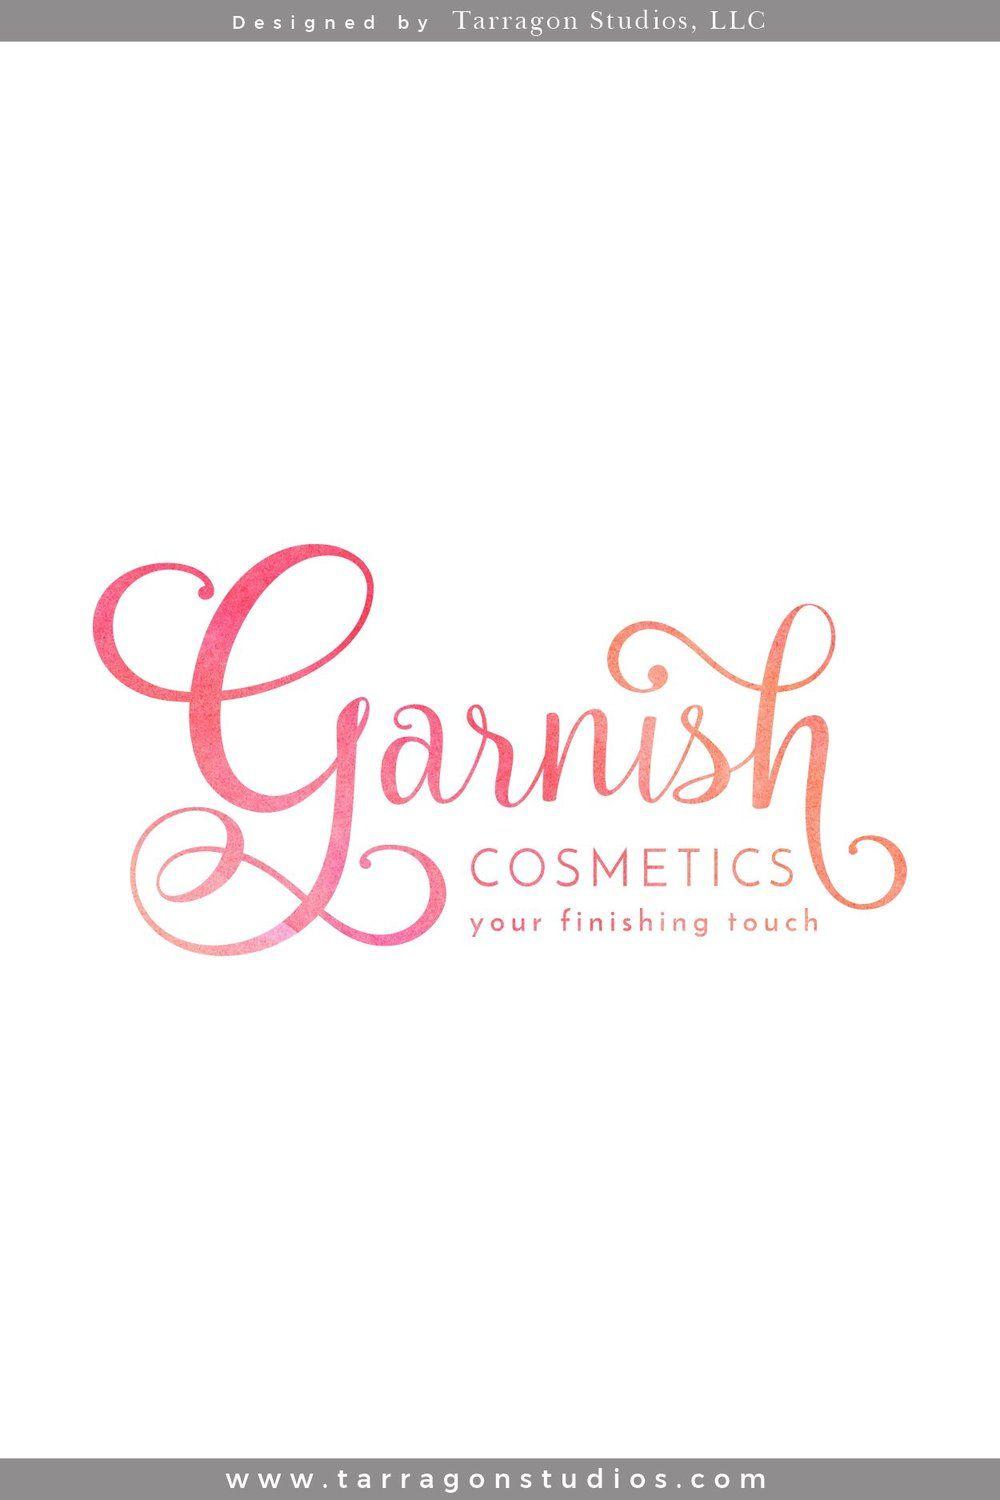 Cosmetics Logo - Brand Identity - Garnish Cosmetics, LLC